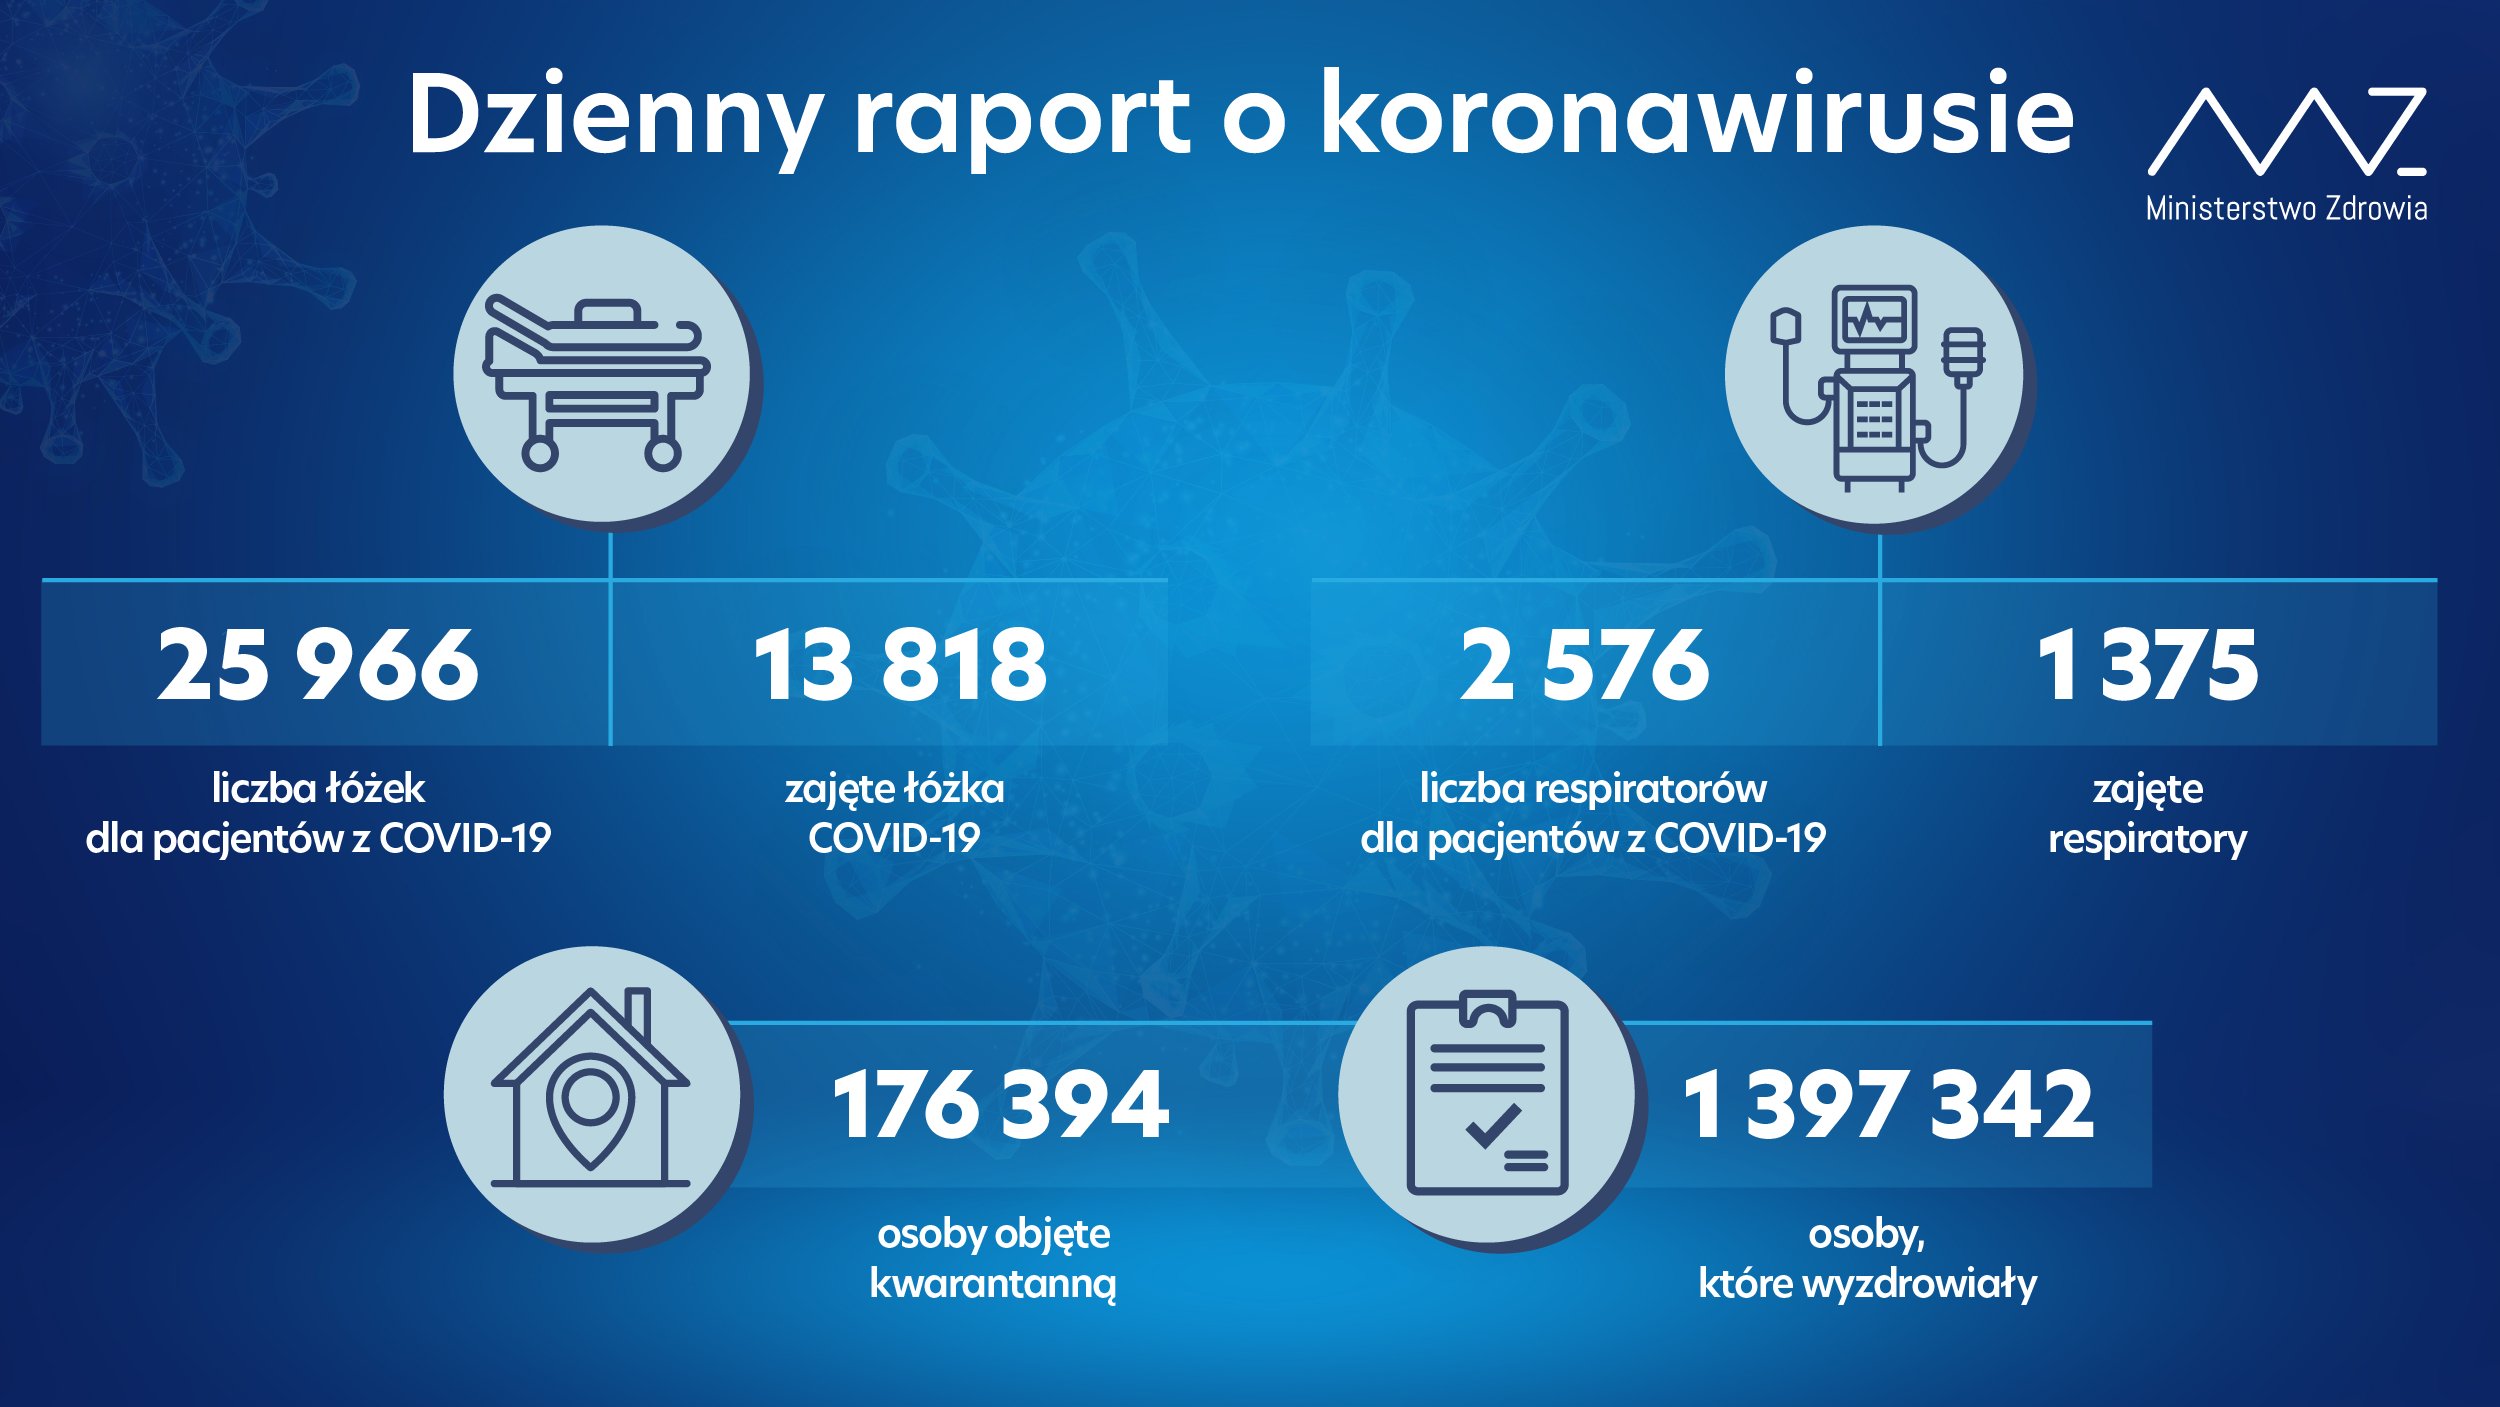 432 nowe zakażenia koronawirusem w woj. lubelskim, w regionie zmarło 19 osób z infekcją COVID-19